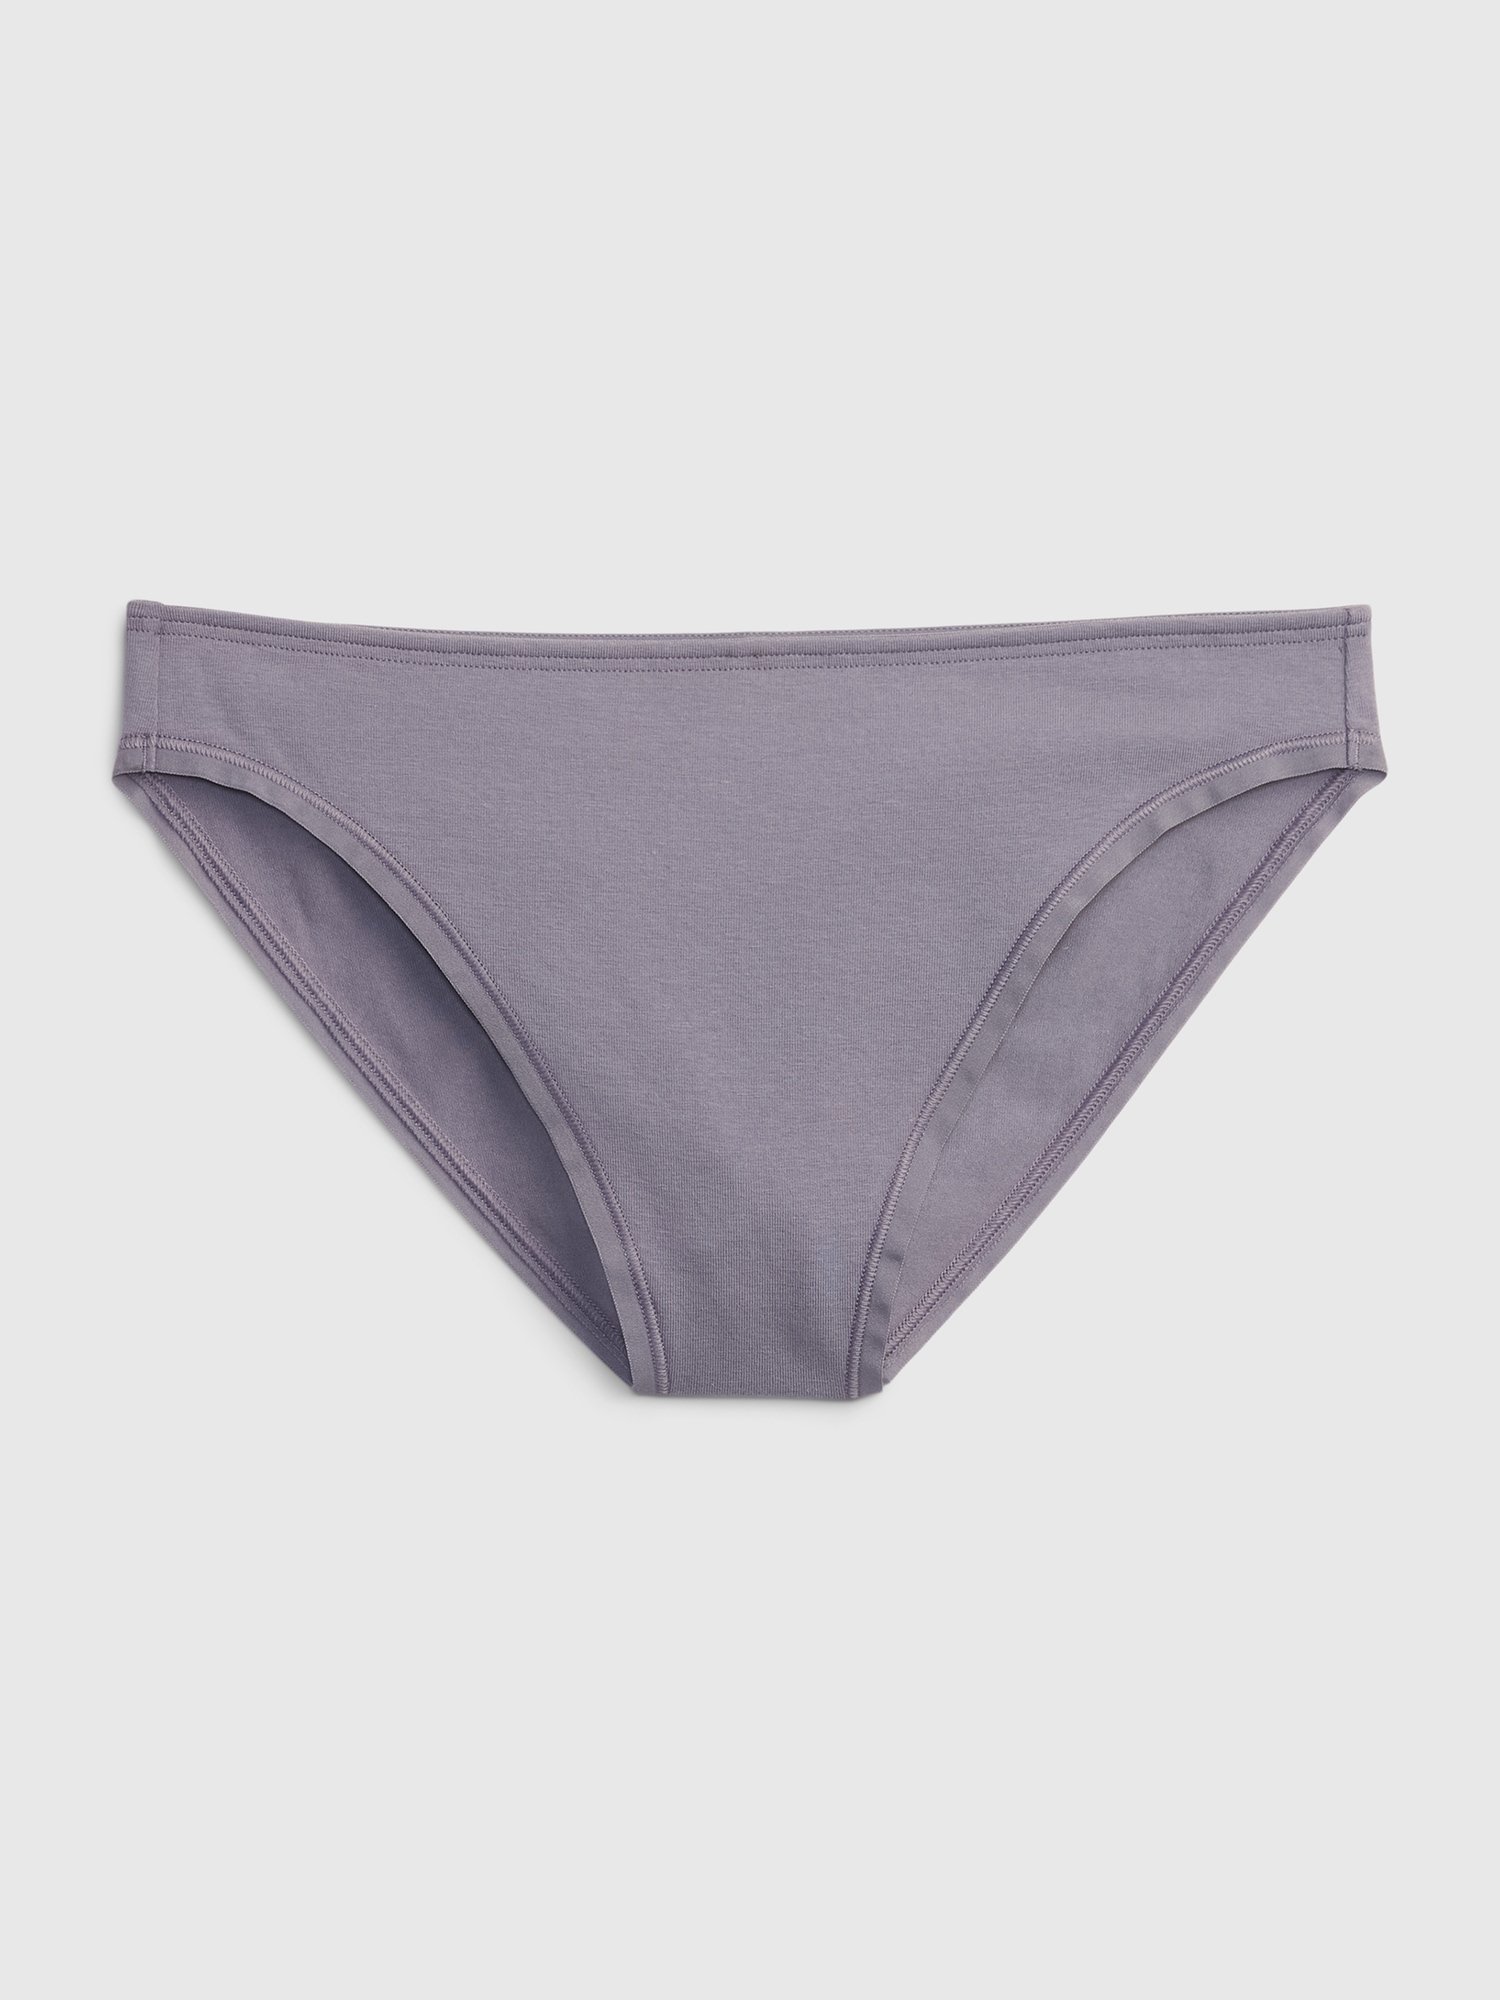 Heather Grey Organic Cotton Women's Underwear